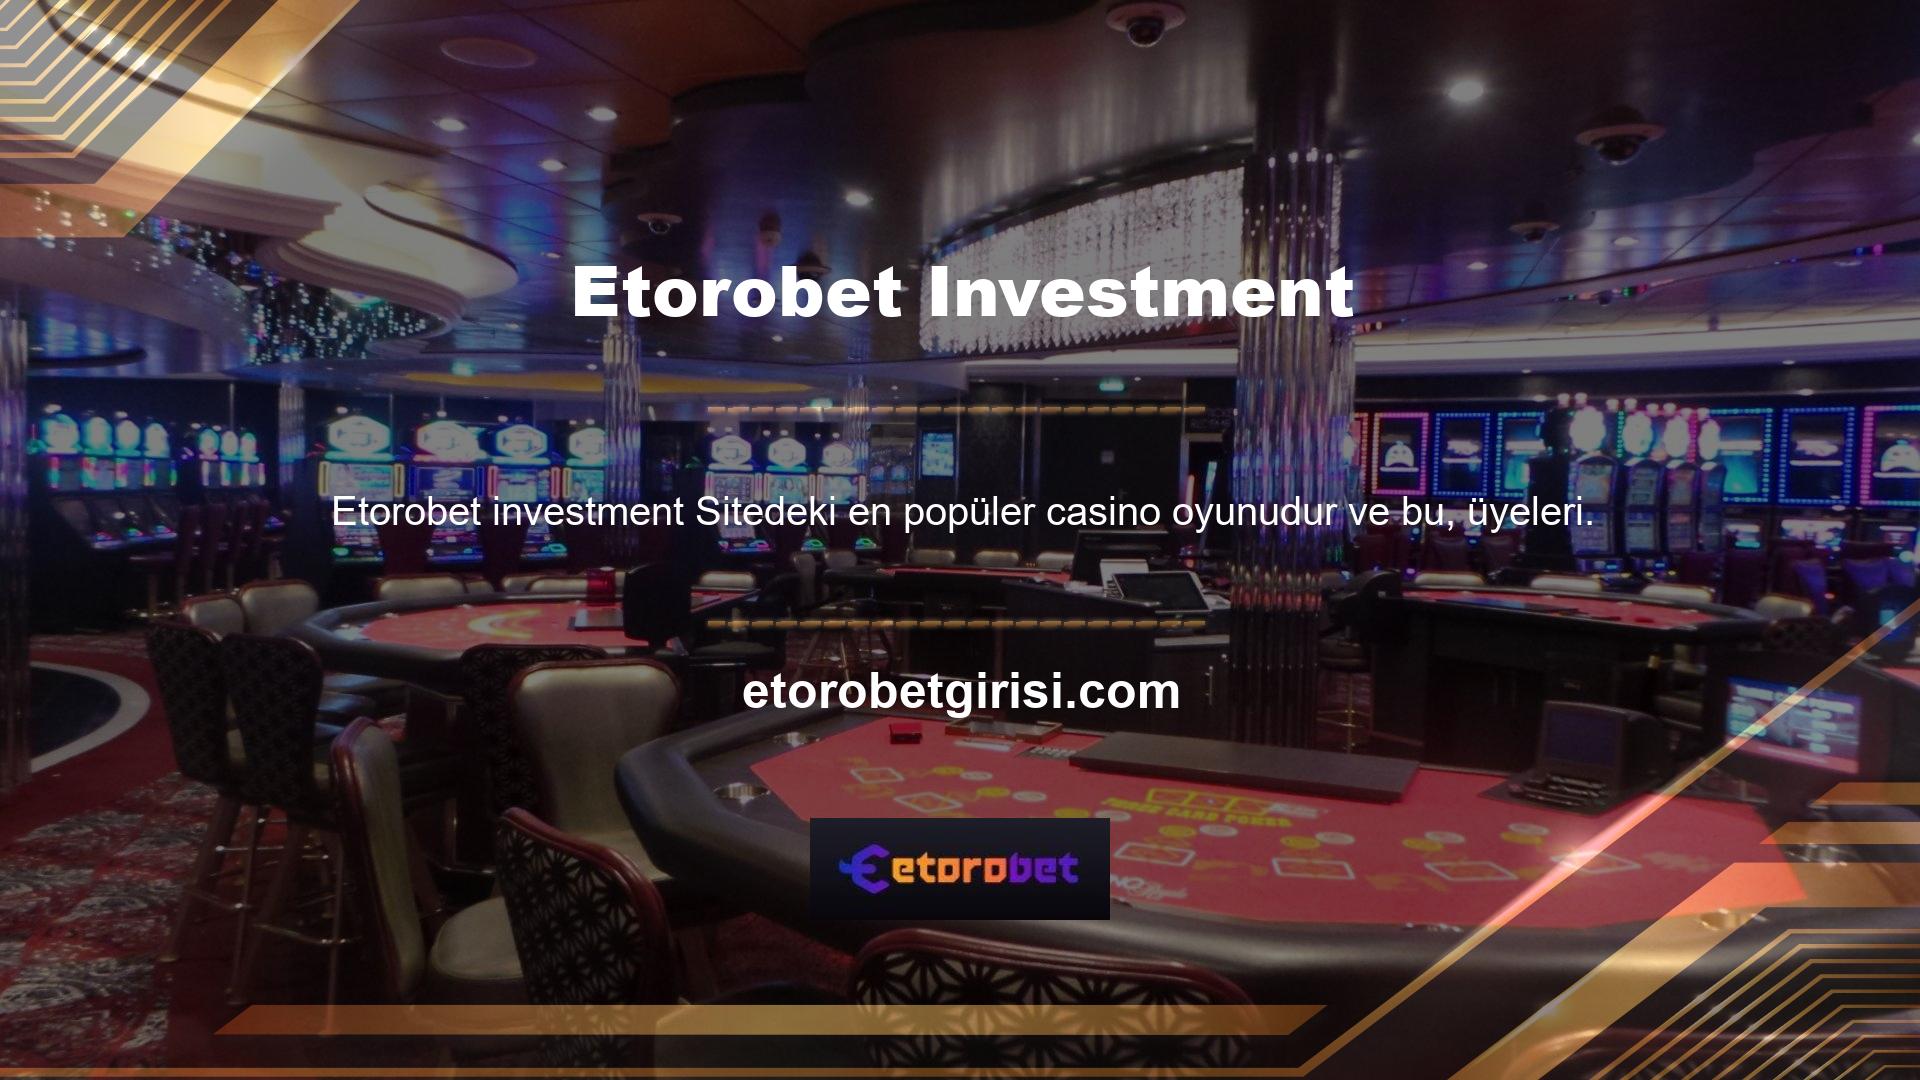 Bir casino şirketi olarak Etorobet, üyelerine çok çeşitli poker bahisleri sunmaktadır